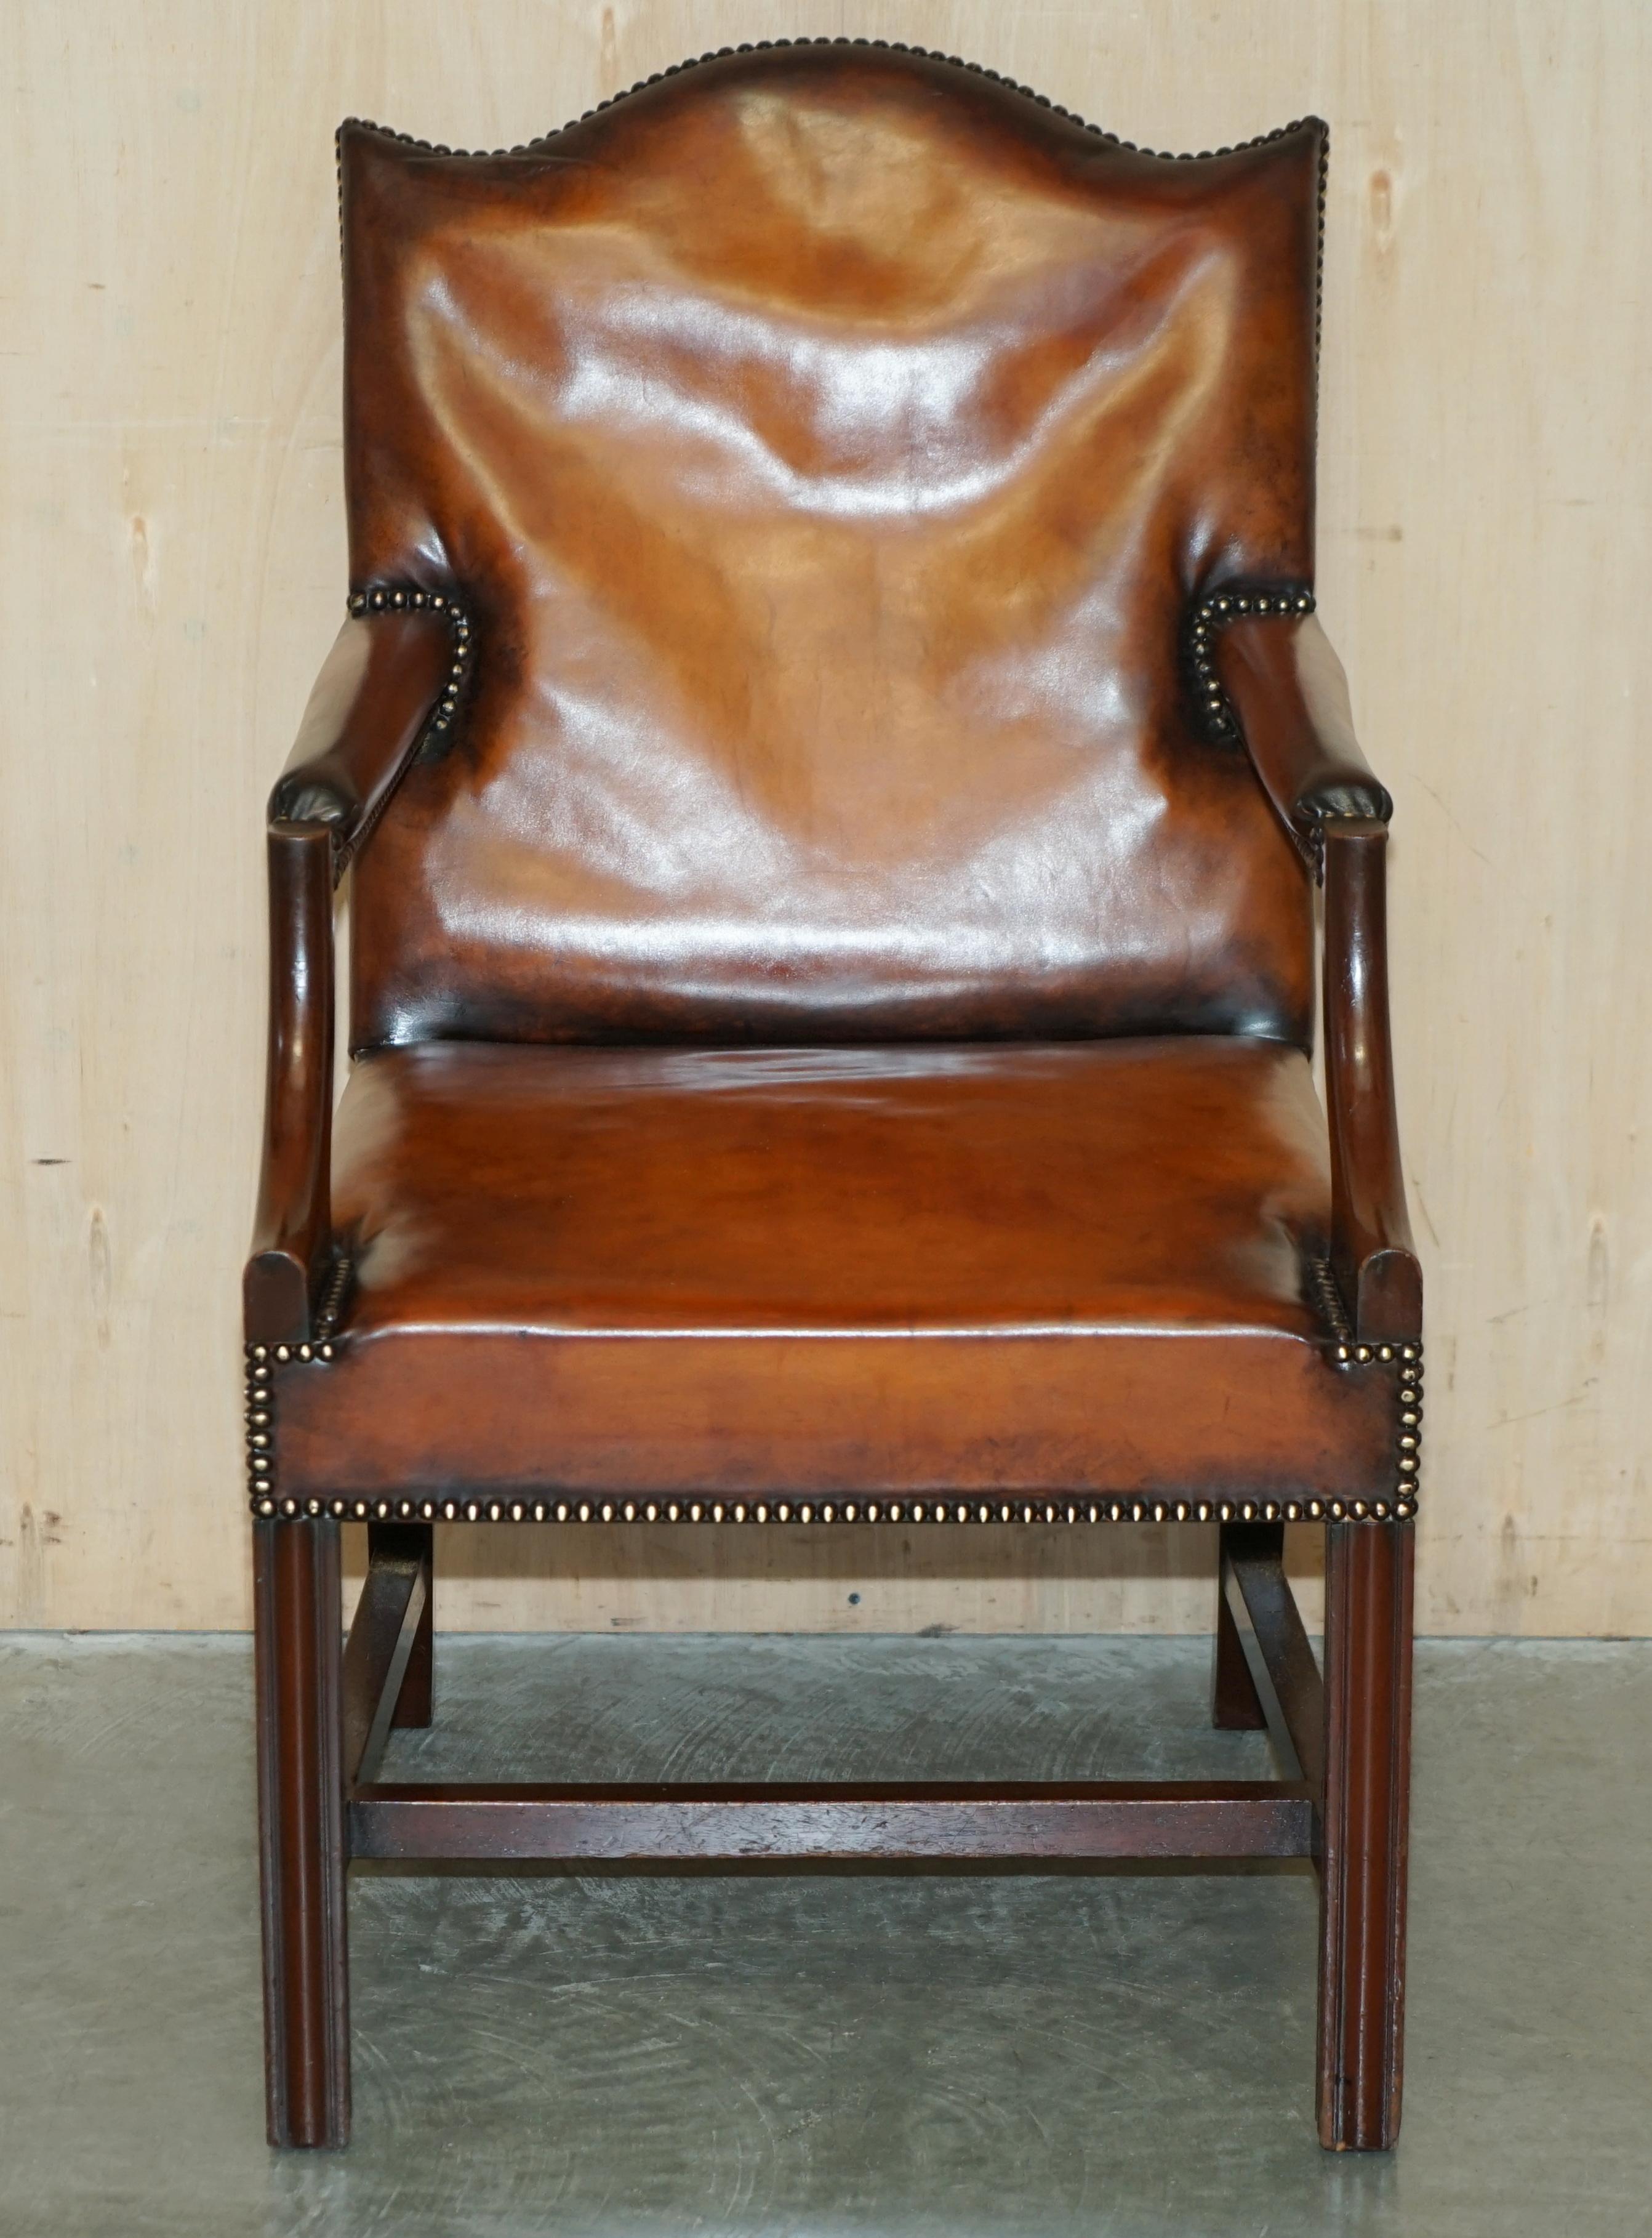 Royal House Antiques

The House of Antiques a le plaisir d'offrir à la vente cet adorable fauteuil de bureau Gainsborough en cuir brun Whisky, fait à la main en Angleterre vers 1900 et entièrement restauré. 

Veuillez noter que les frais de